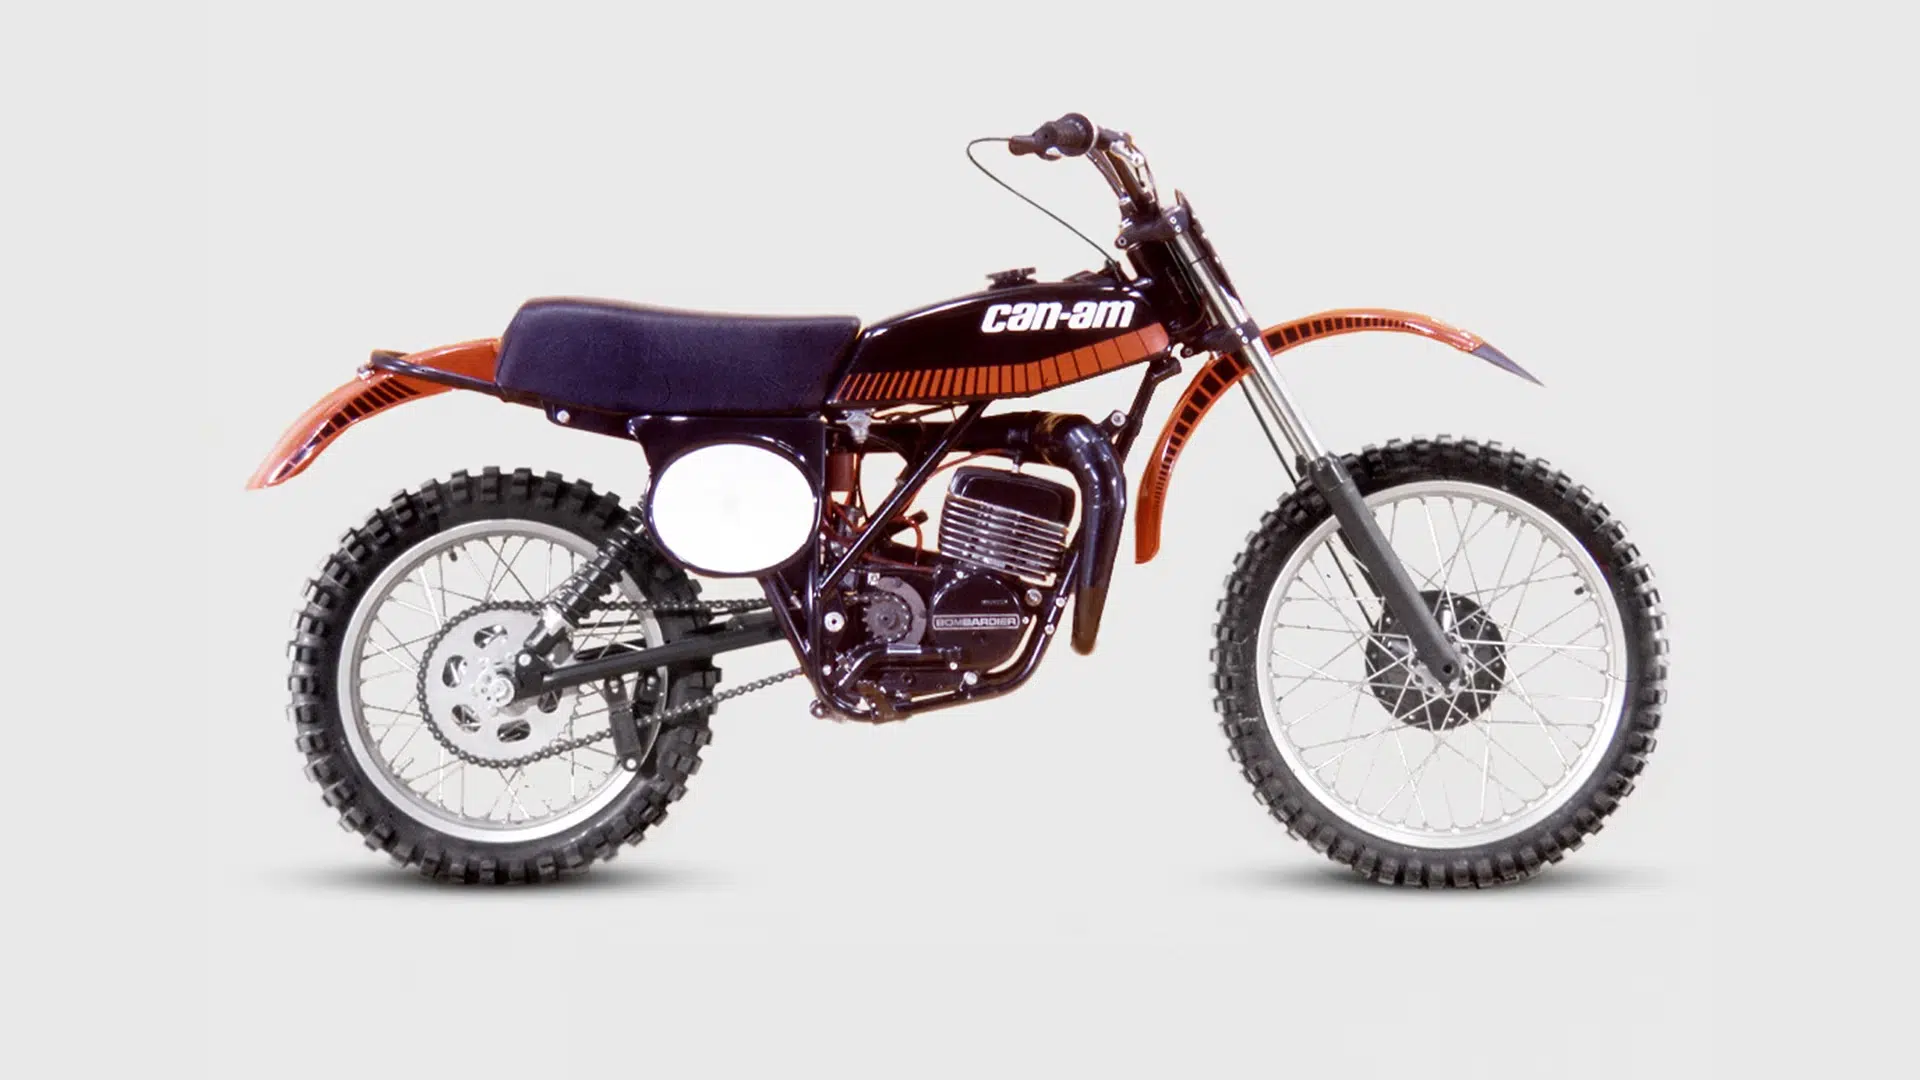 Motos Can-Am Pulse et Origin versus motos Can-Am d’origine des années 1970. Voyez-vous des ressemblances ?